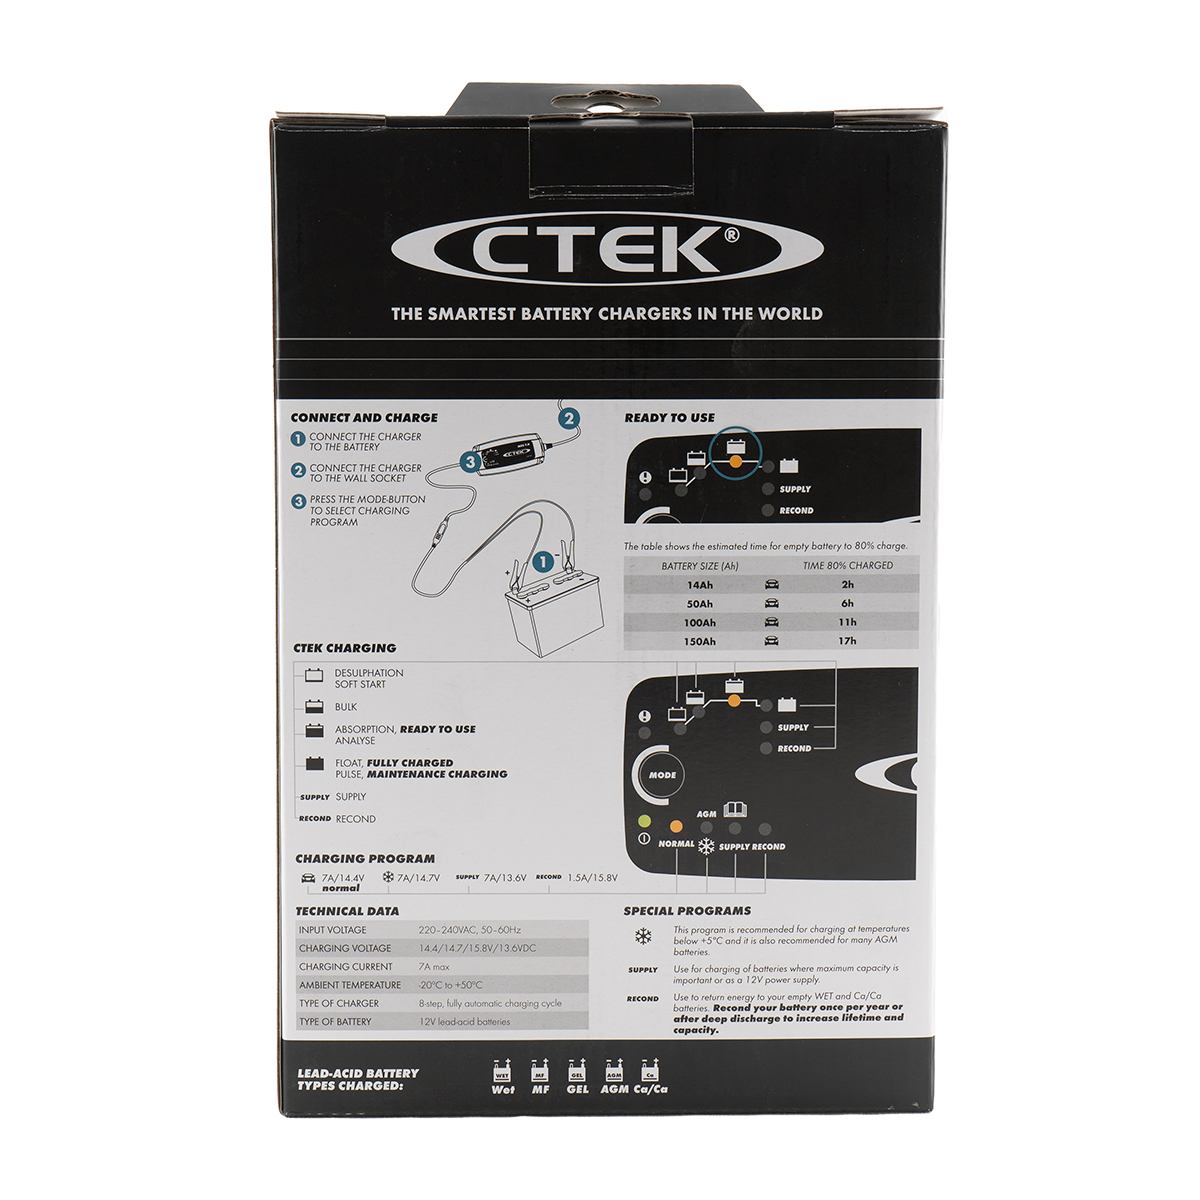 CTEK MXS 7.0-12V Batterie-Ladegerät 12V 7A